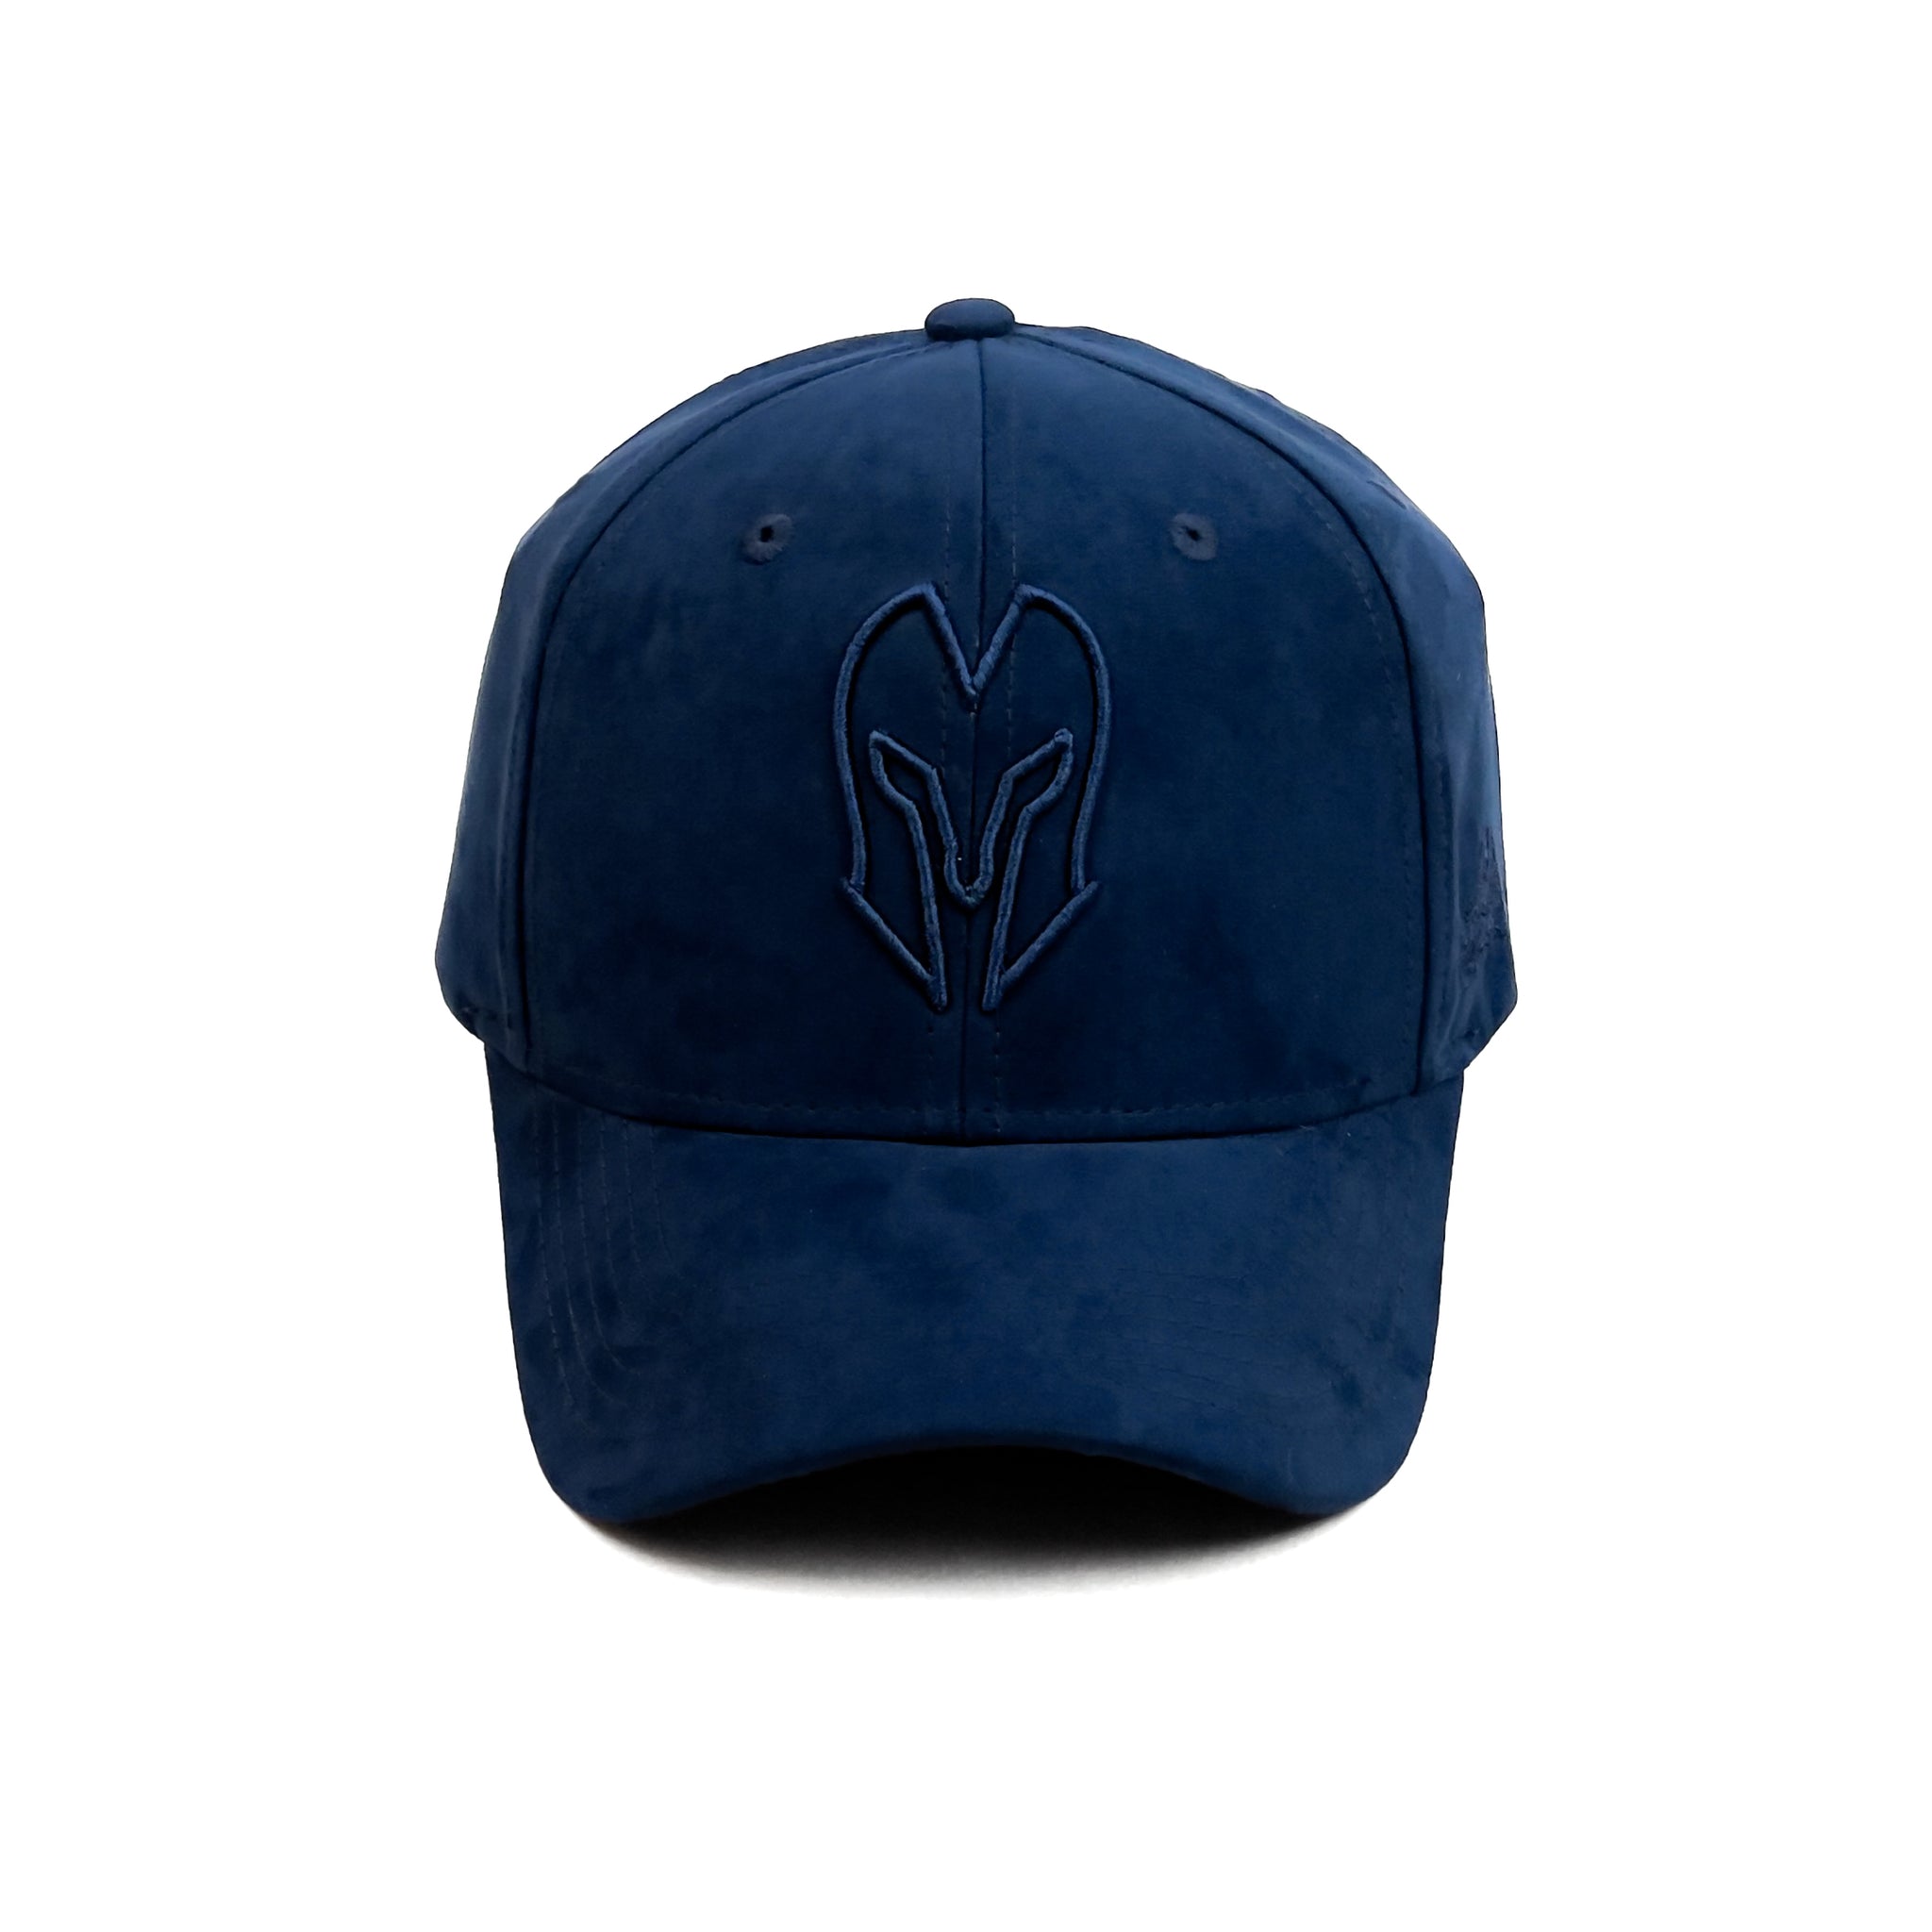 HEAD GEAR NAVY BLUE SUPER SUEDE CAP